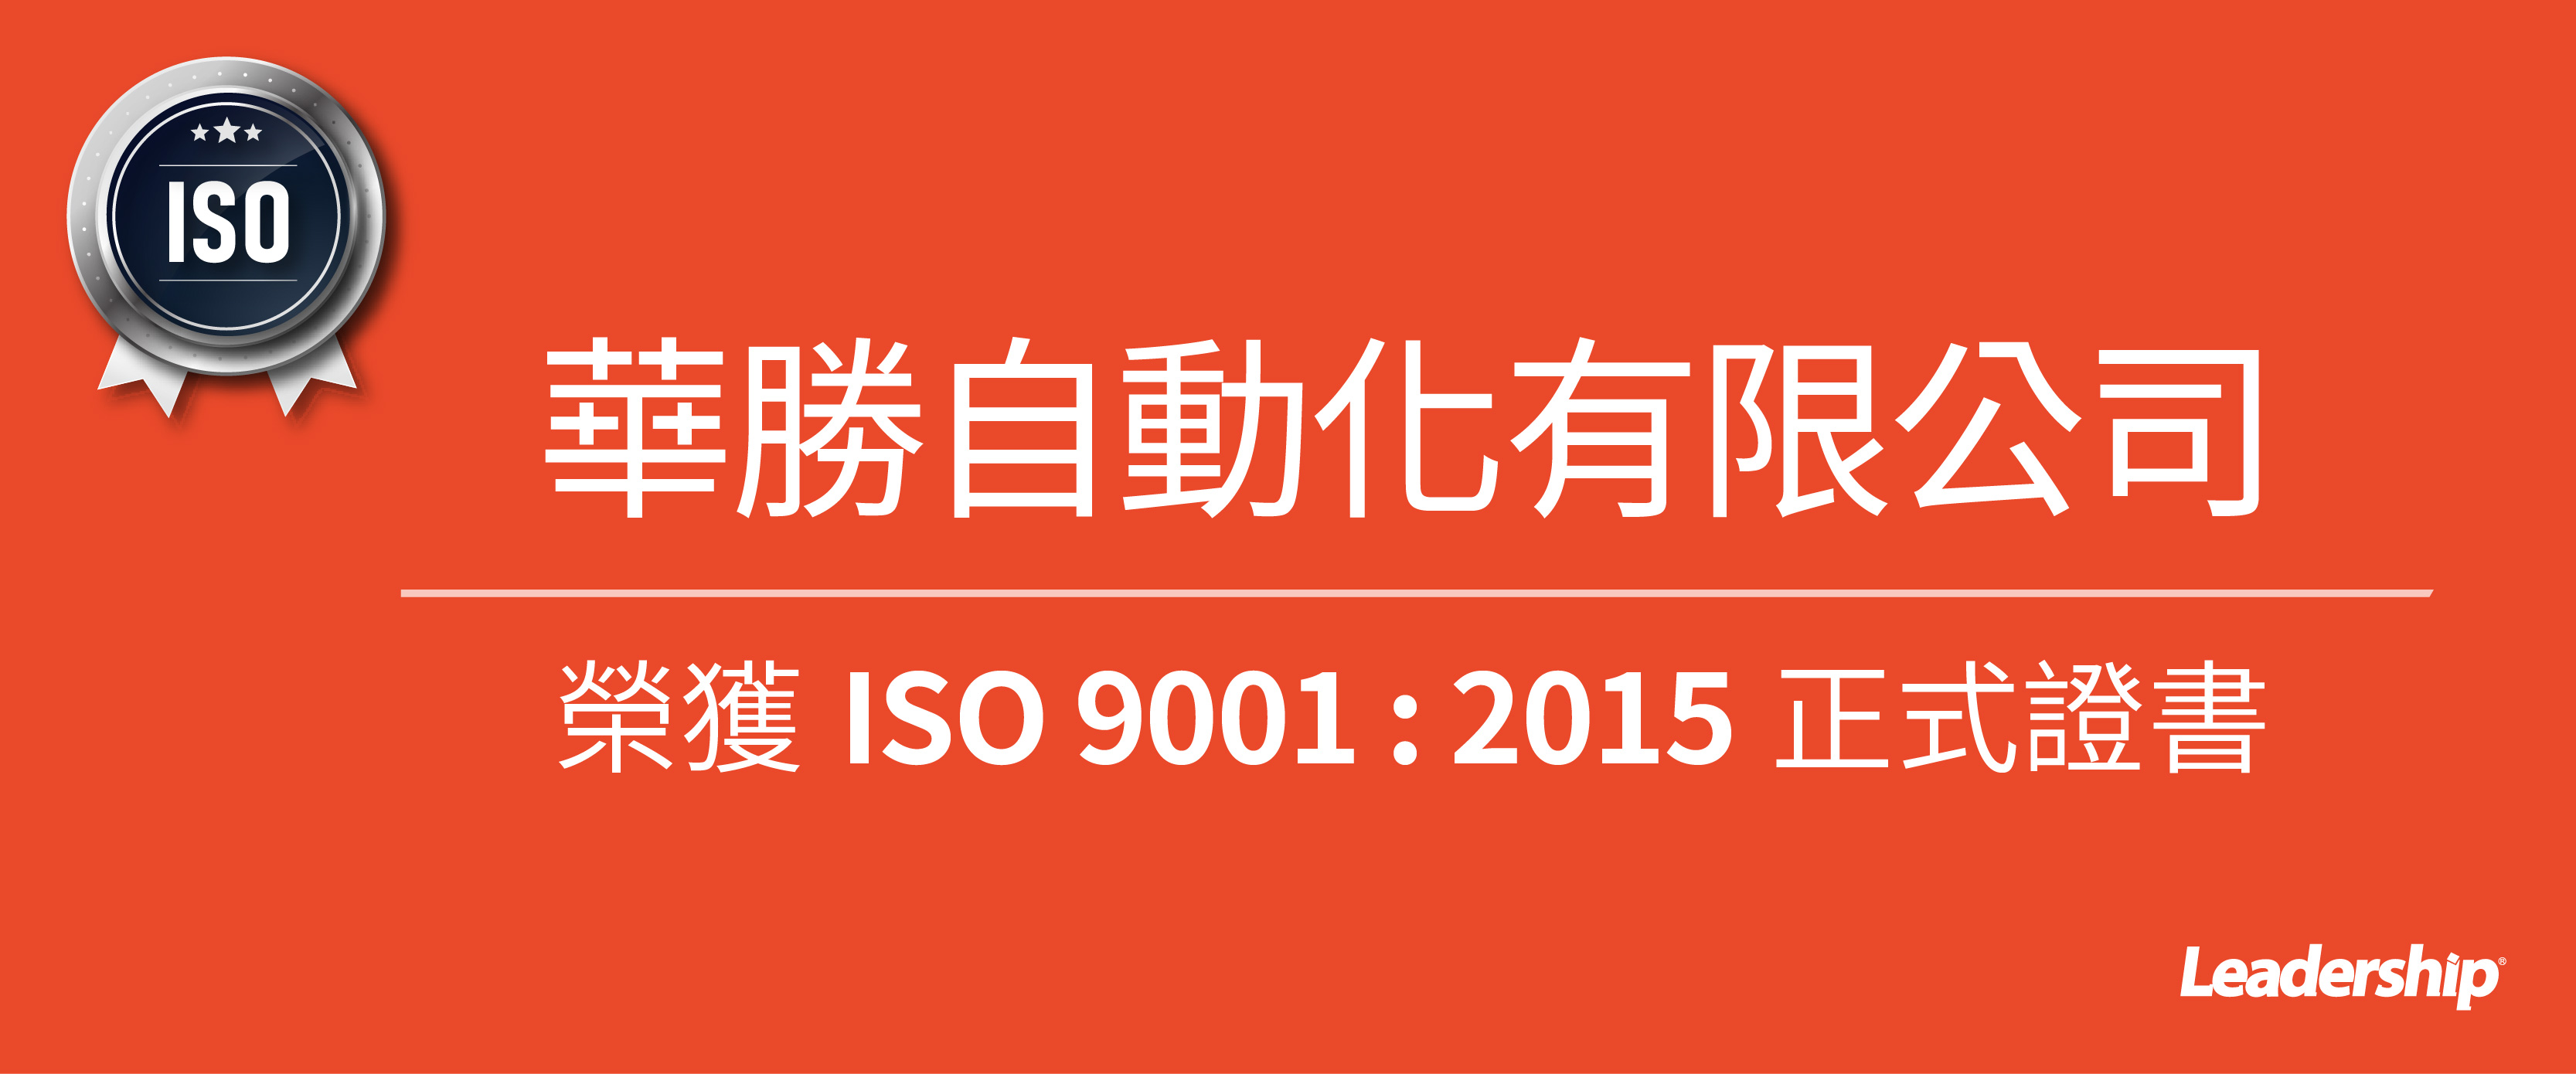 華勝自動化有限公司 榮獲 ISO 9001 : 2015 證書